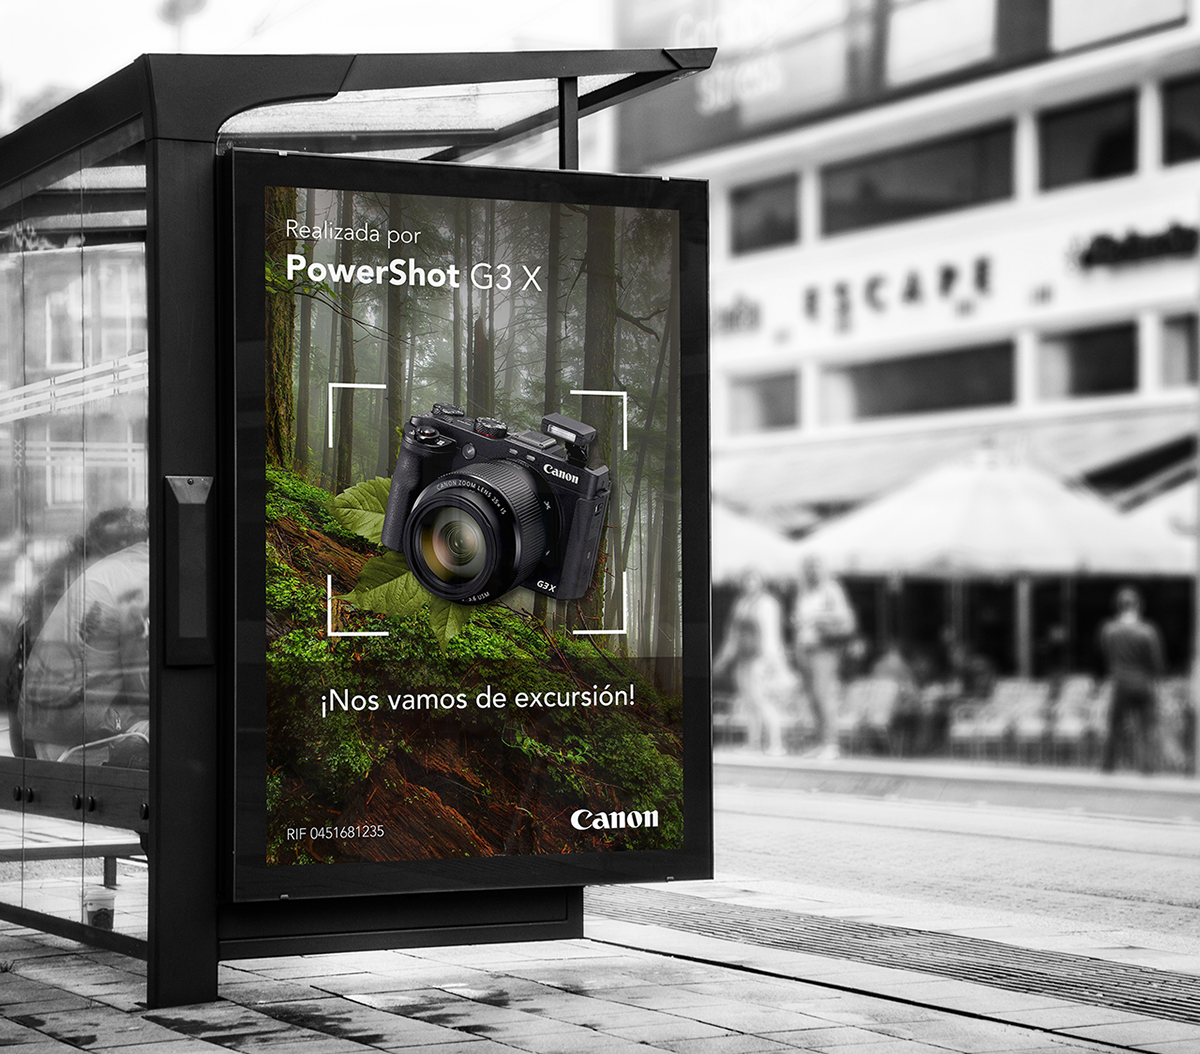 design diseño Advertising  photoshop Canon creative direction publicidad Photography  social media